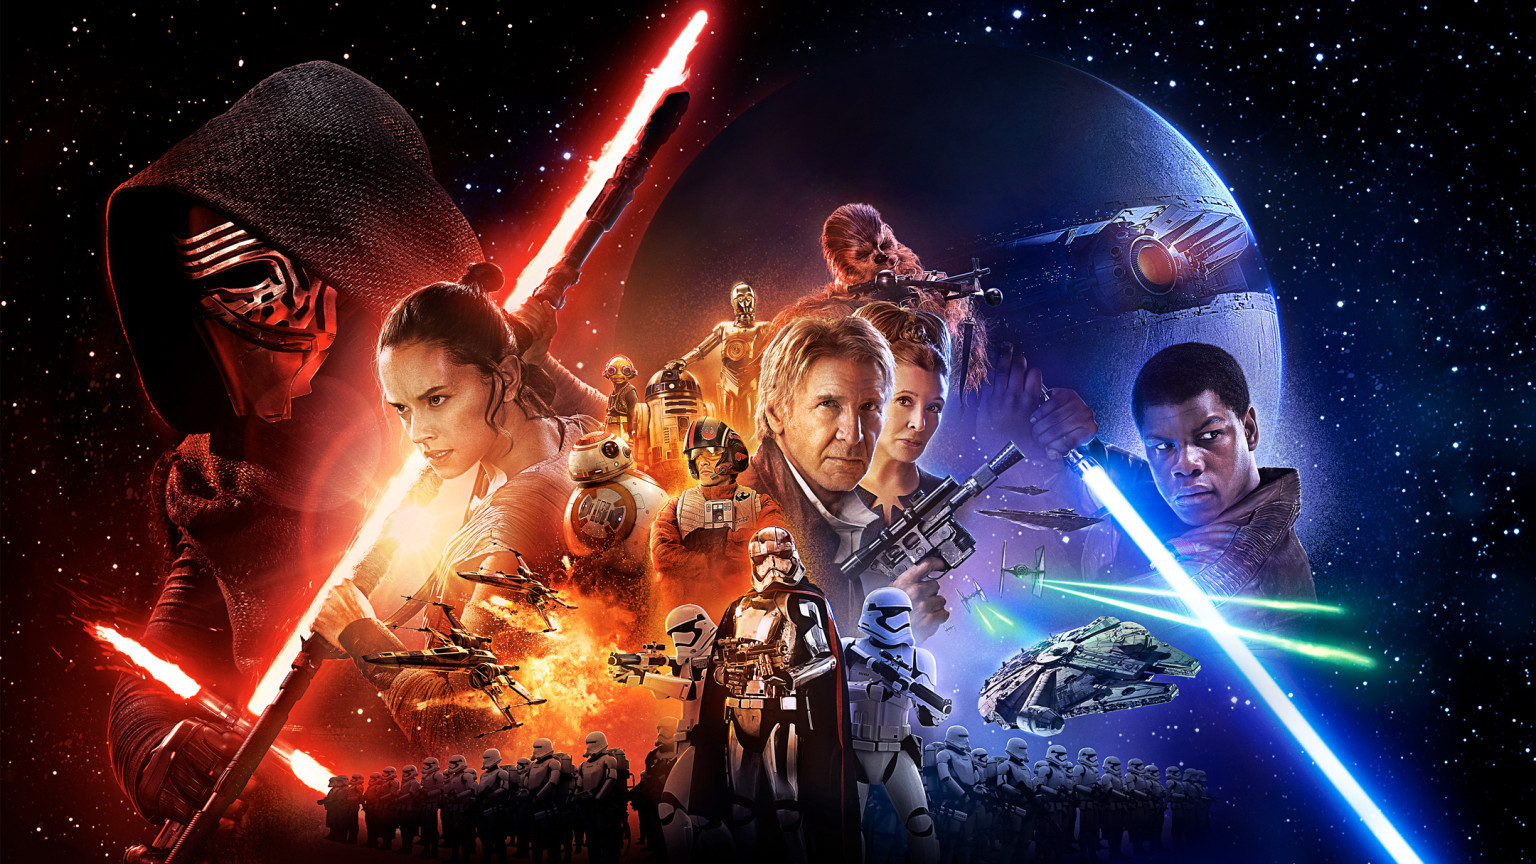 Star Wars 7 sur TMC : pourquoi le temps de présence de Luke Skywalker a été raccourci ?